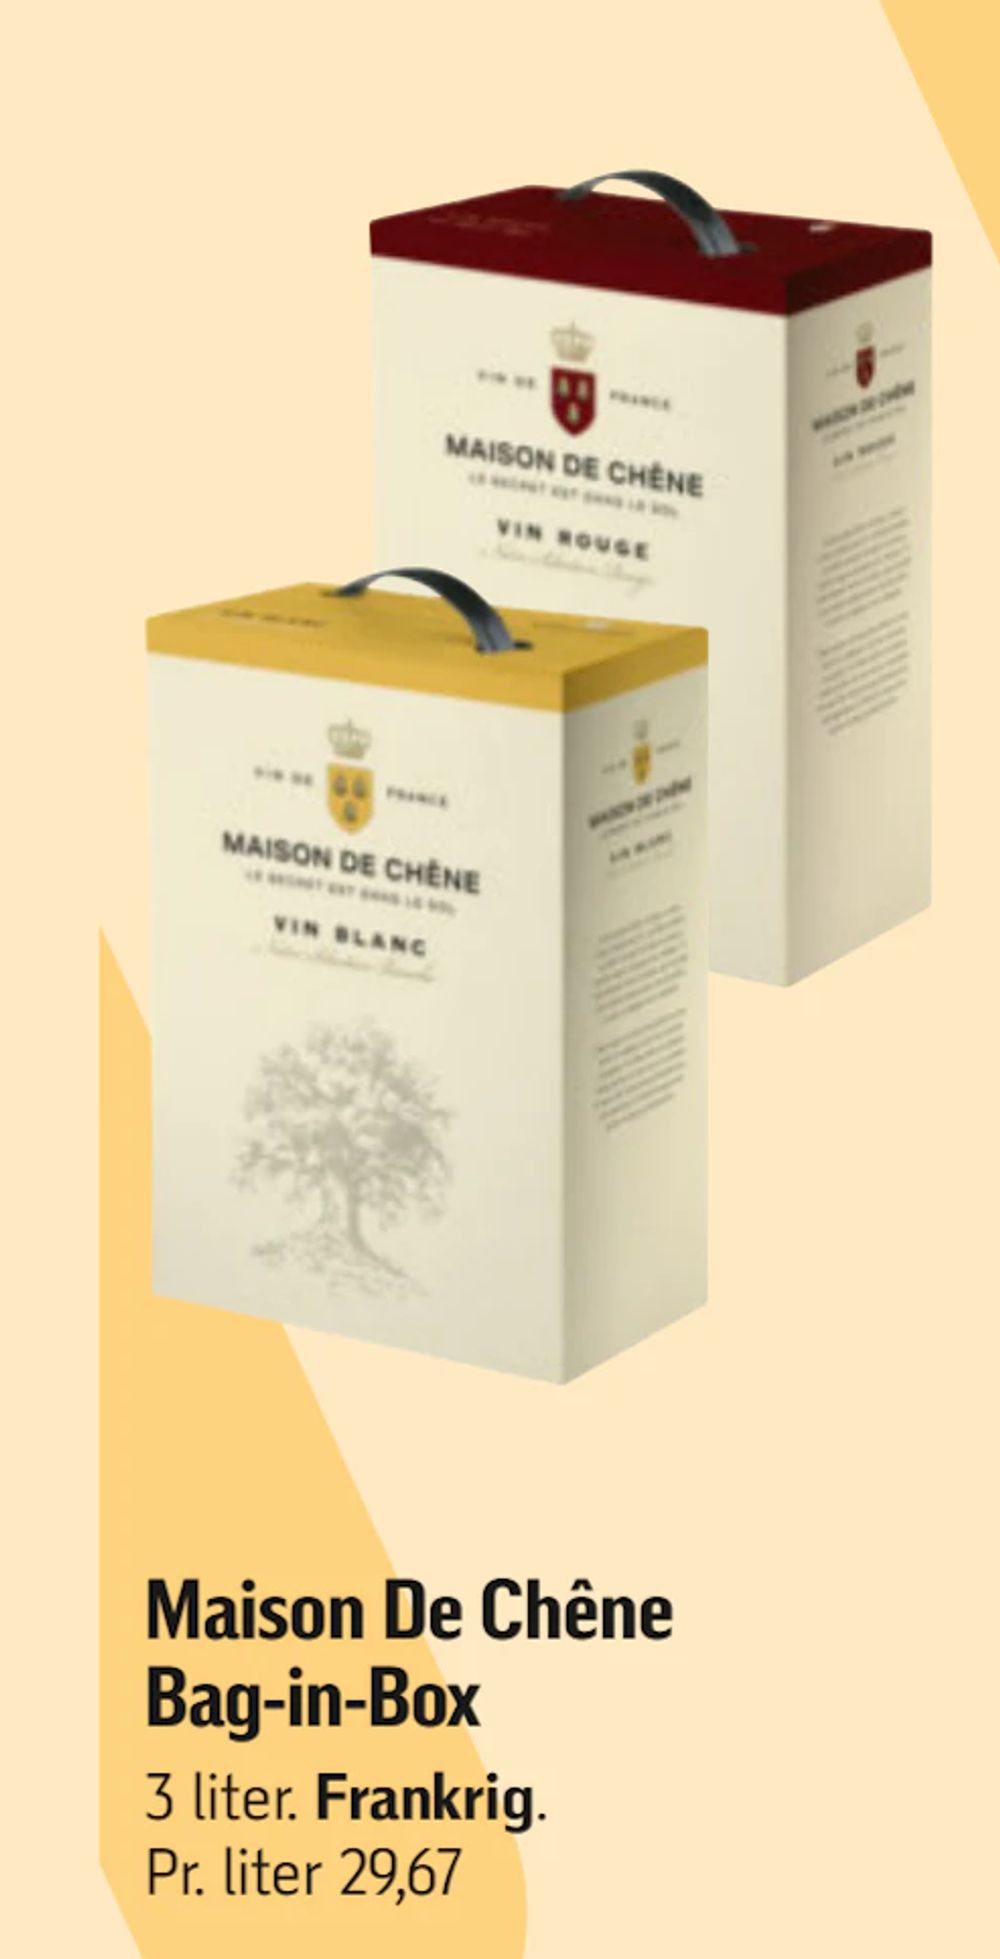 Tilbud på Maison De Chêne Bag-in-Box fra føtex til 89 kr.